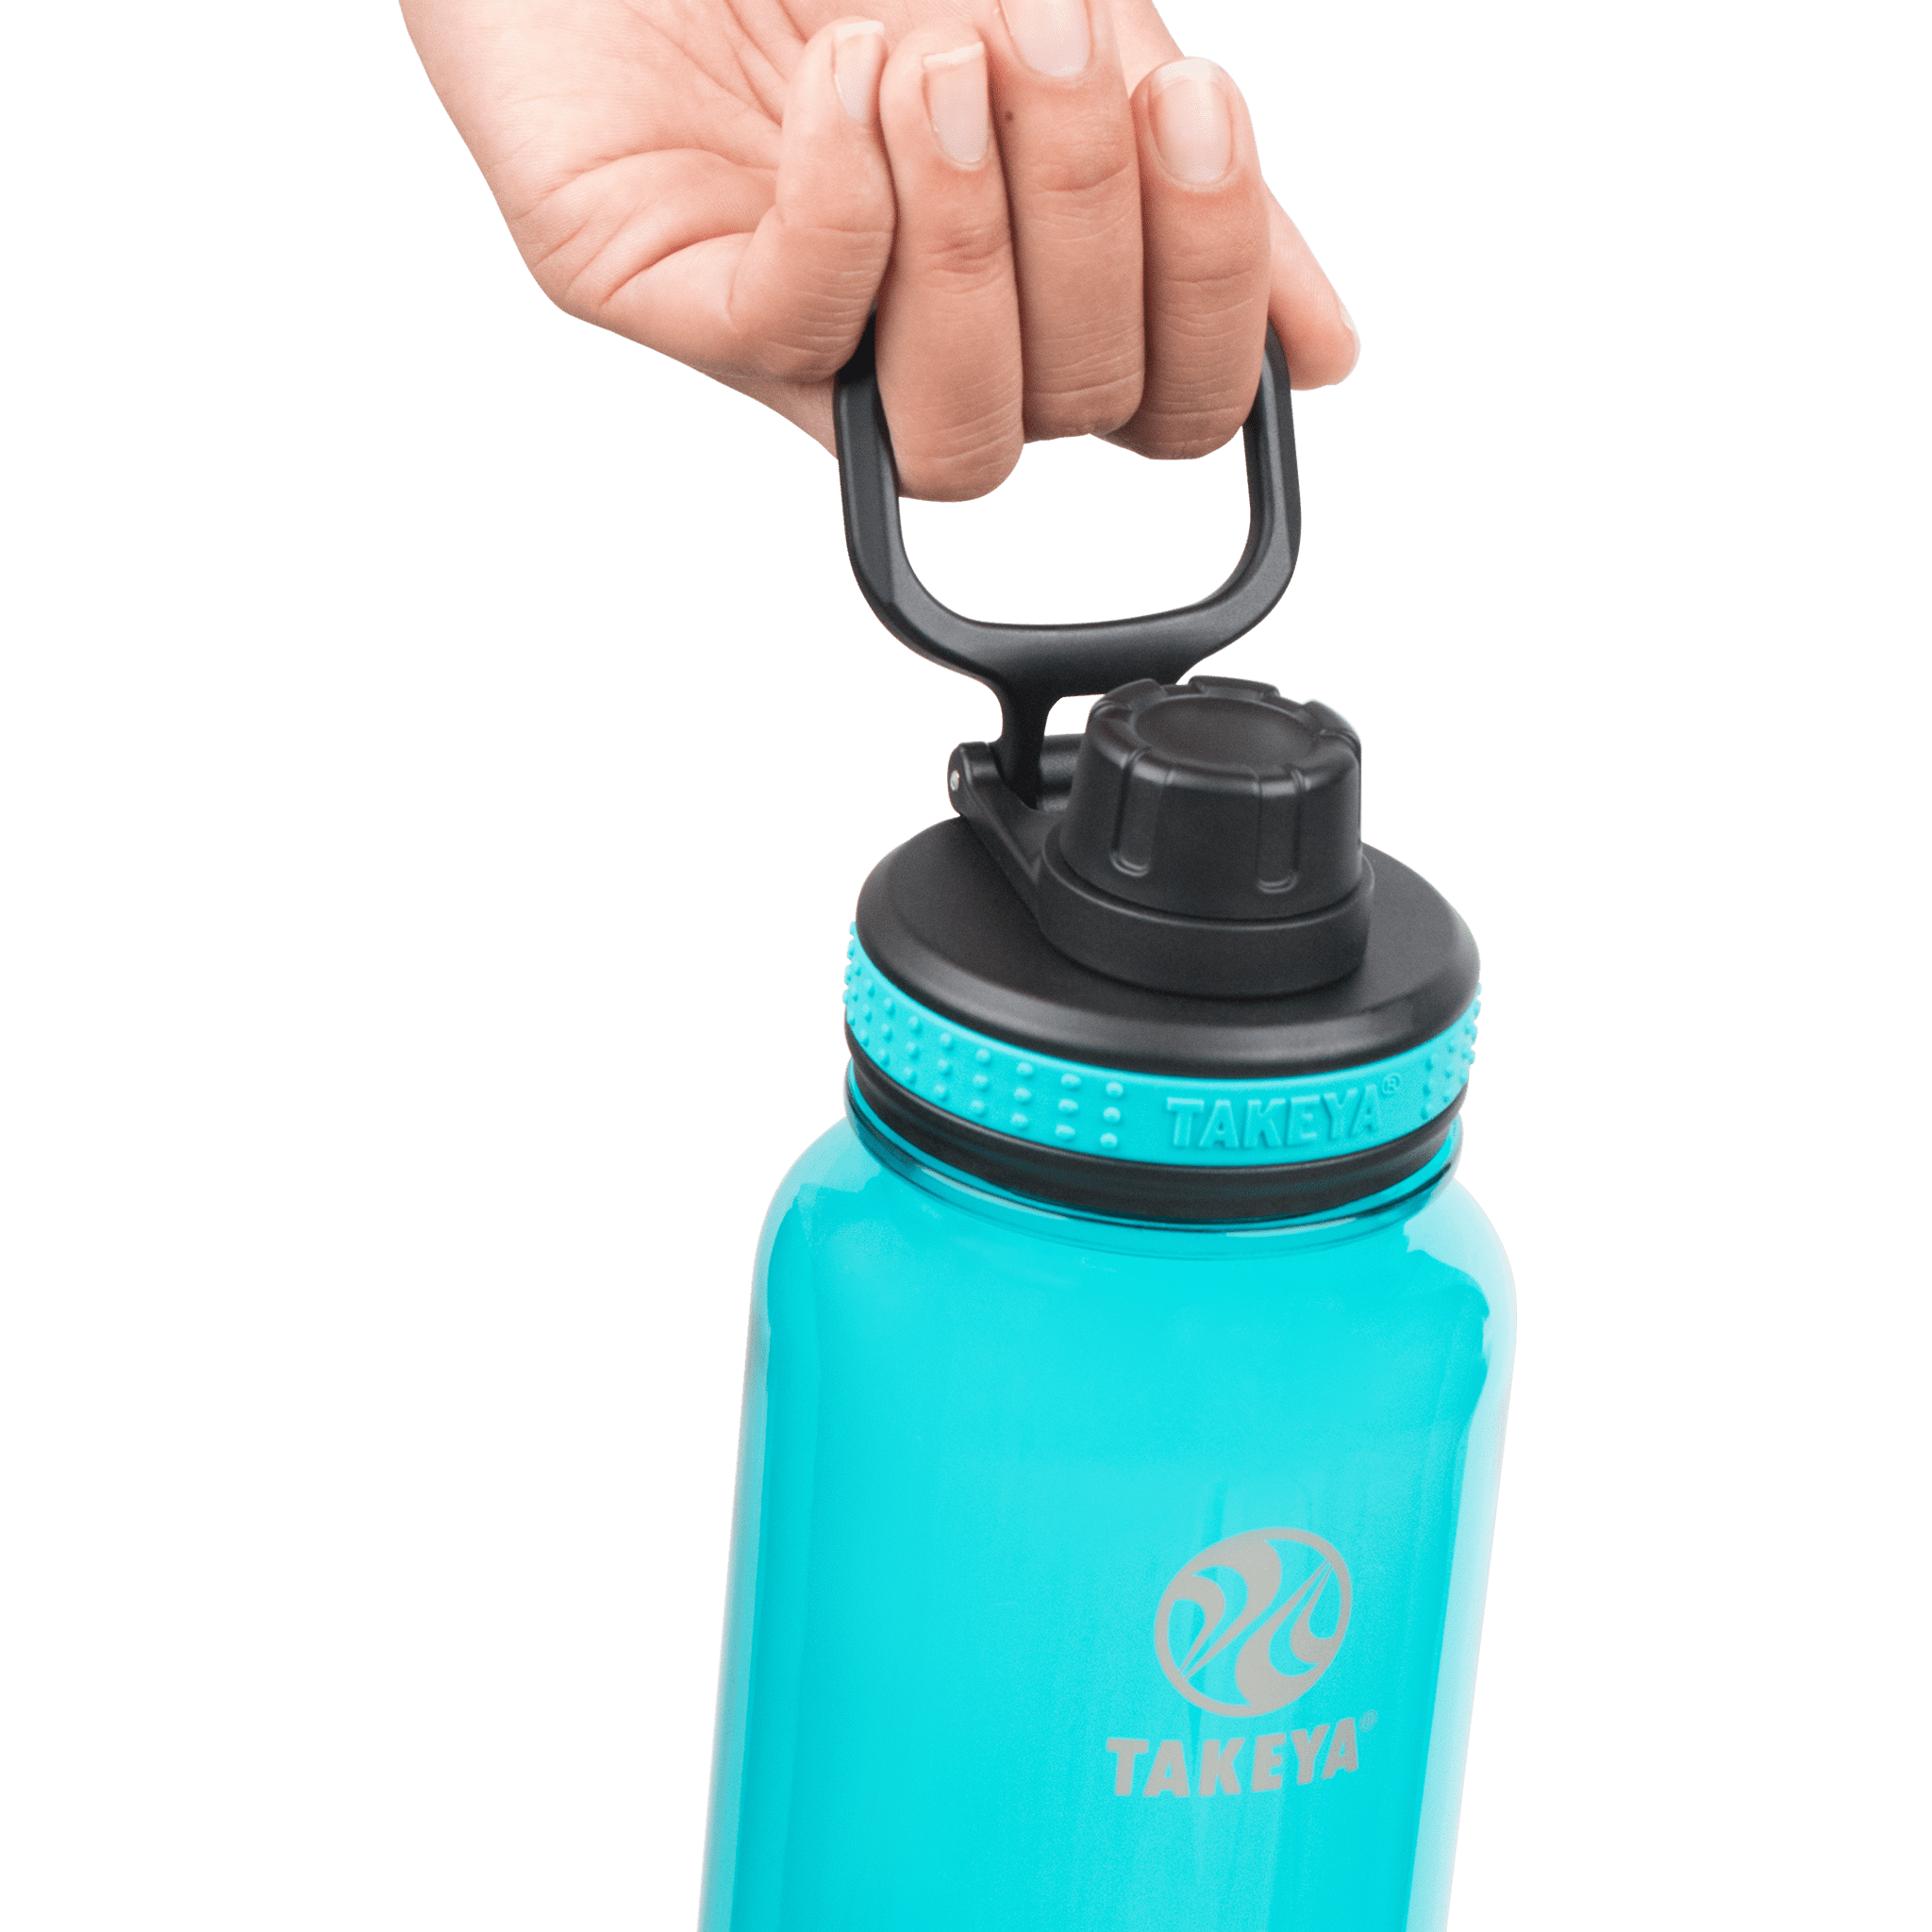 Takeya Tritan Spout Water Bottles, 18 oz, Breezy Blue/Stormy Black, Set of 2 Bottles